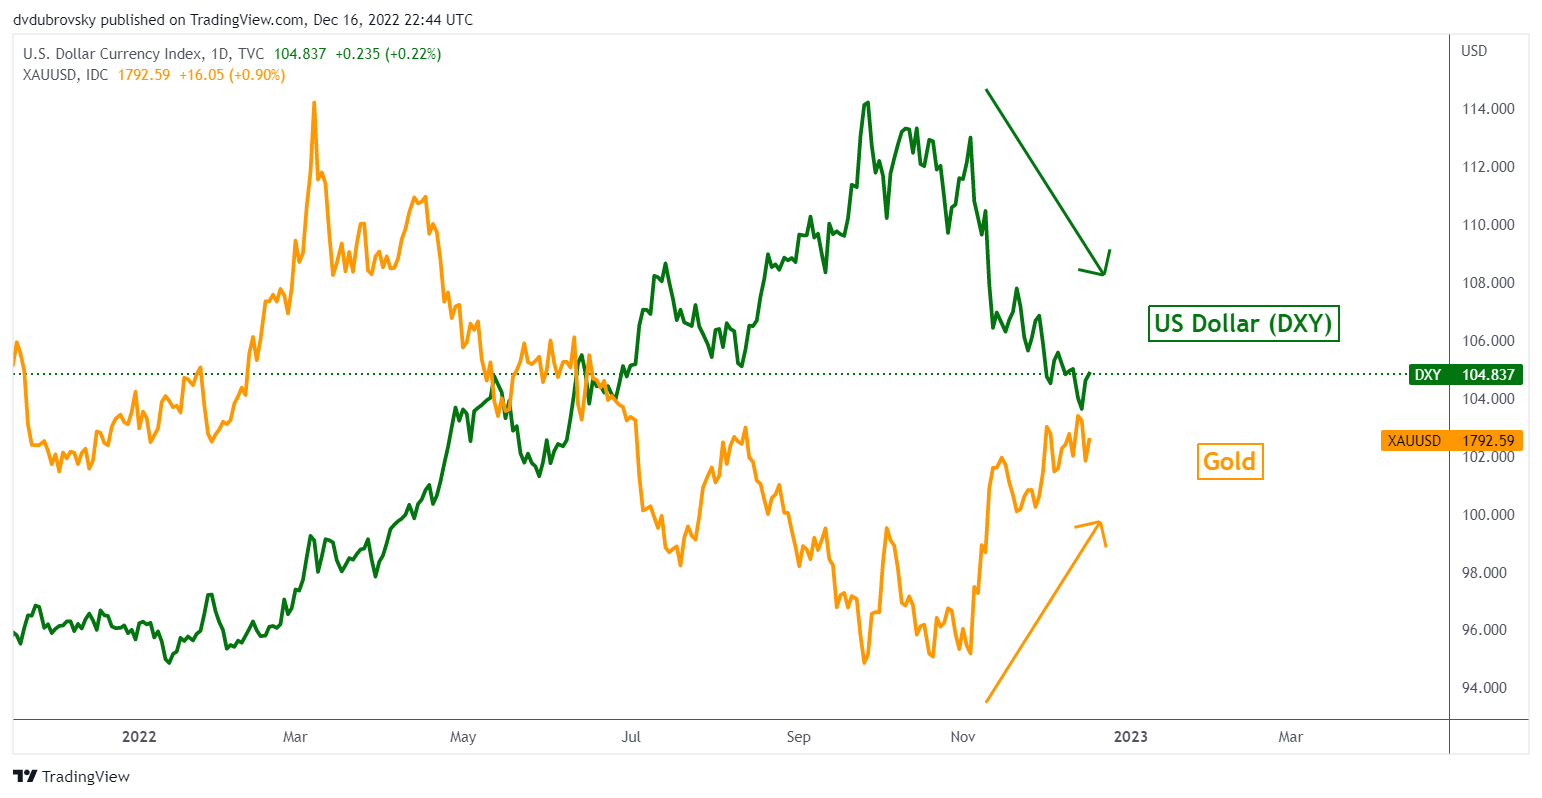 gold vs us dollar